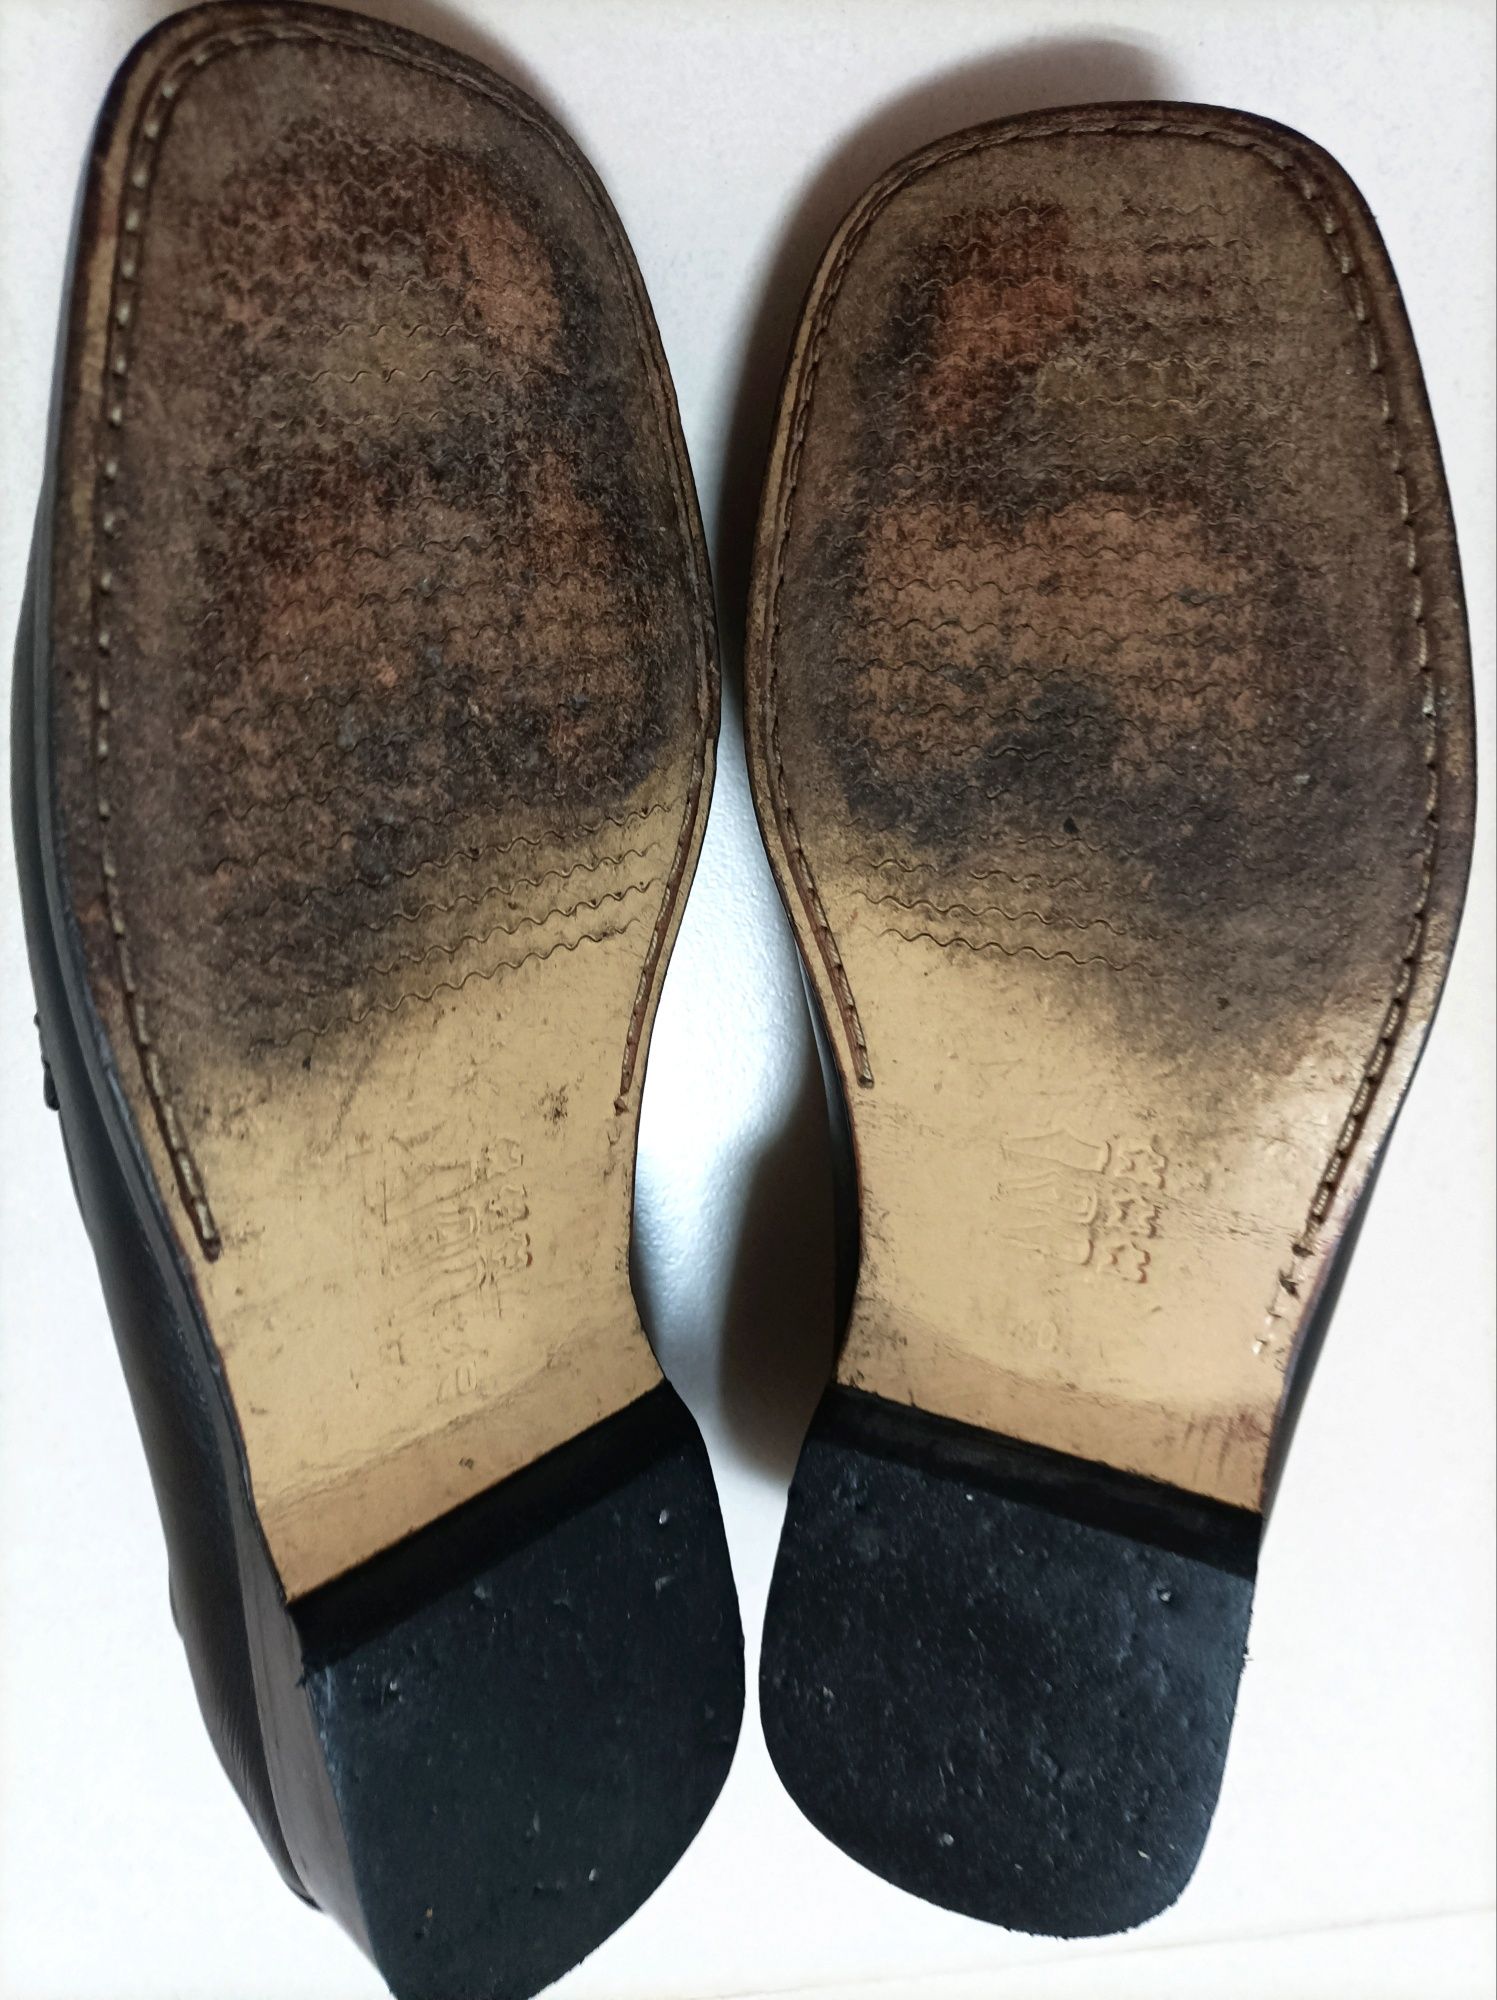 Sapatos pretos em pele genuína marca Triunfo (Tam. 40)